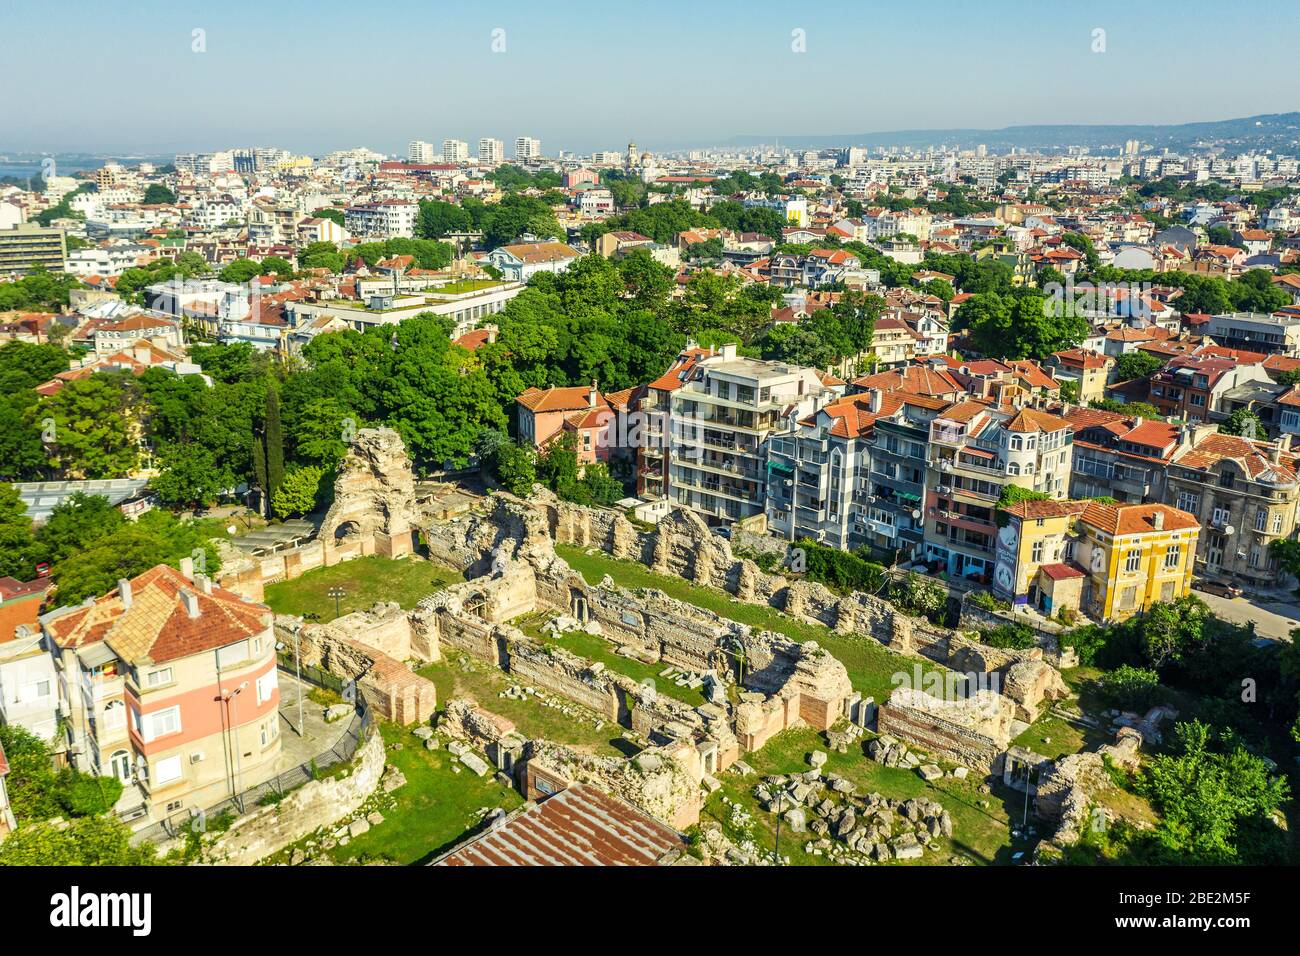 Europe, Bulgaria, Varna, aerial view of thermal bath roman ruins Stock Photo